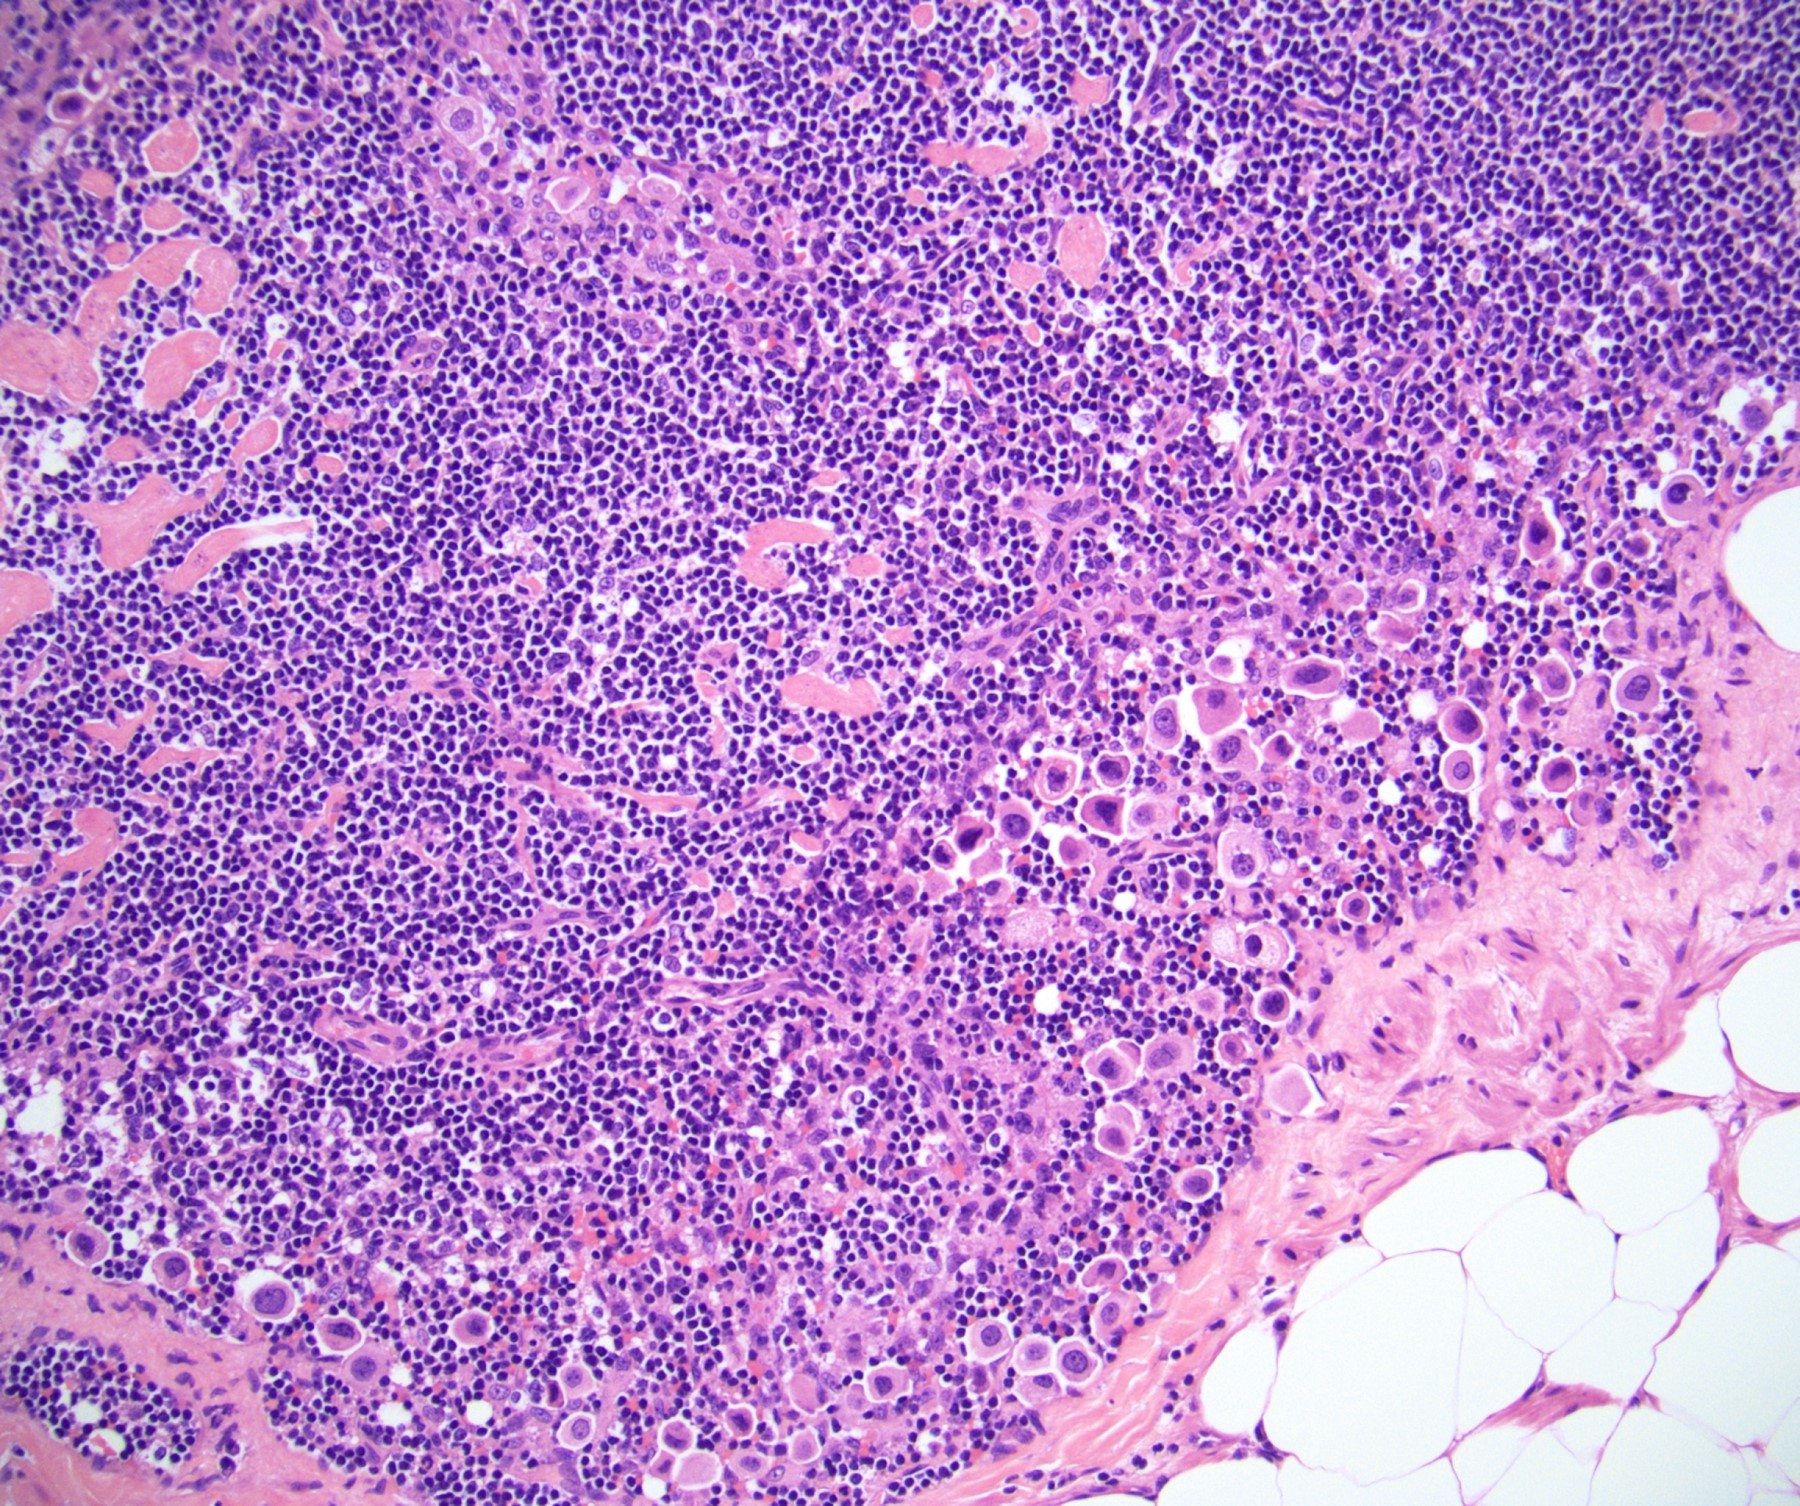 Lymph node metastasis (pN3)